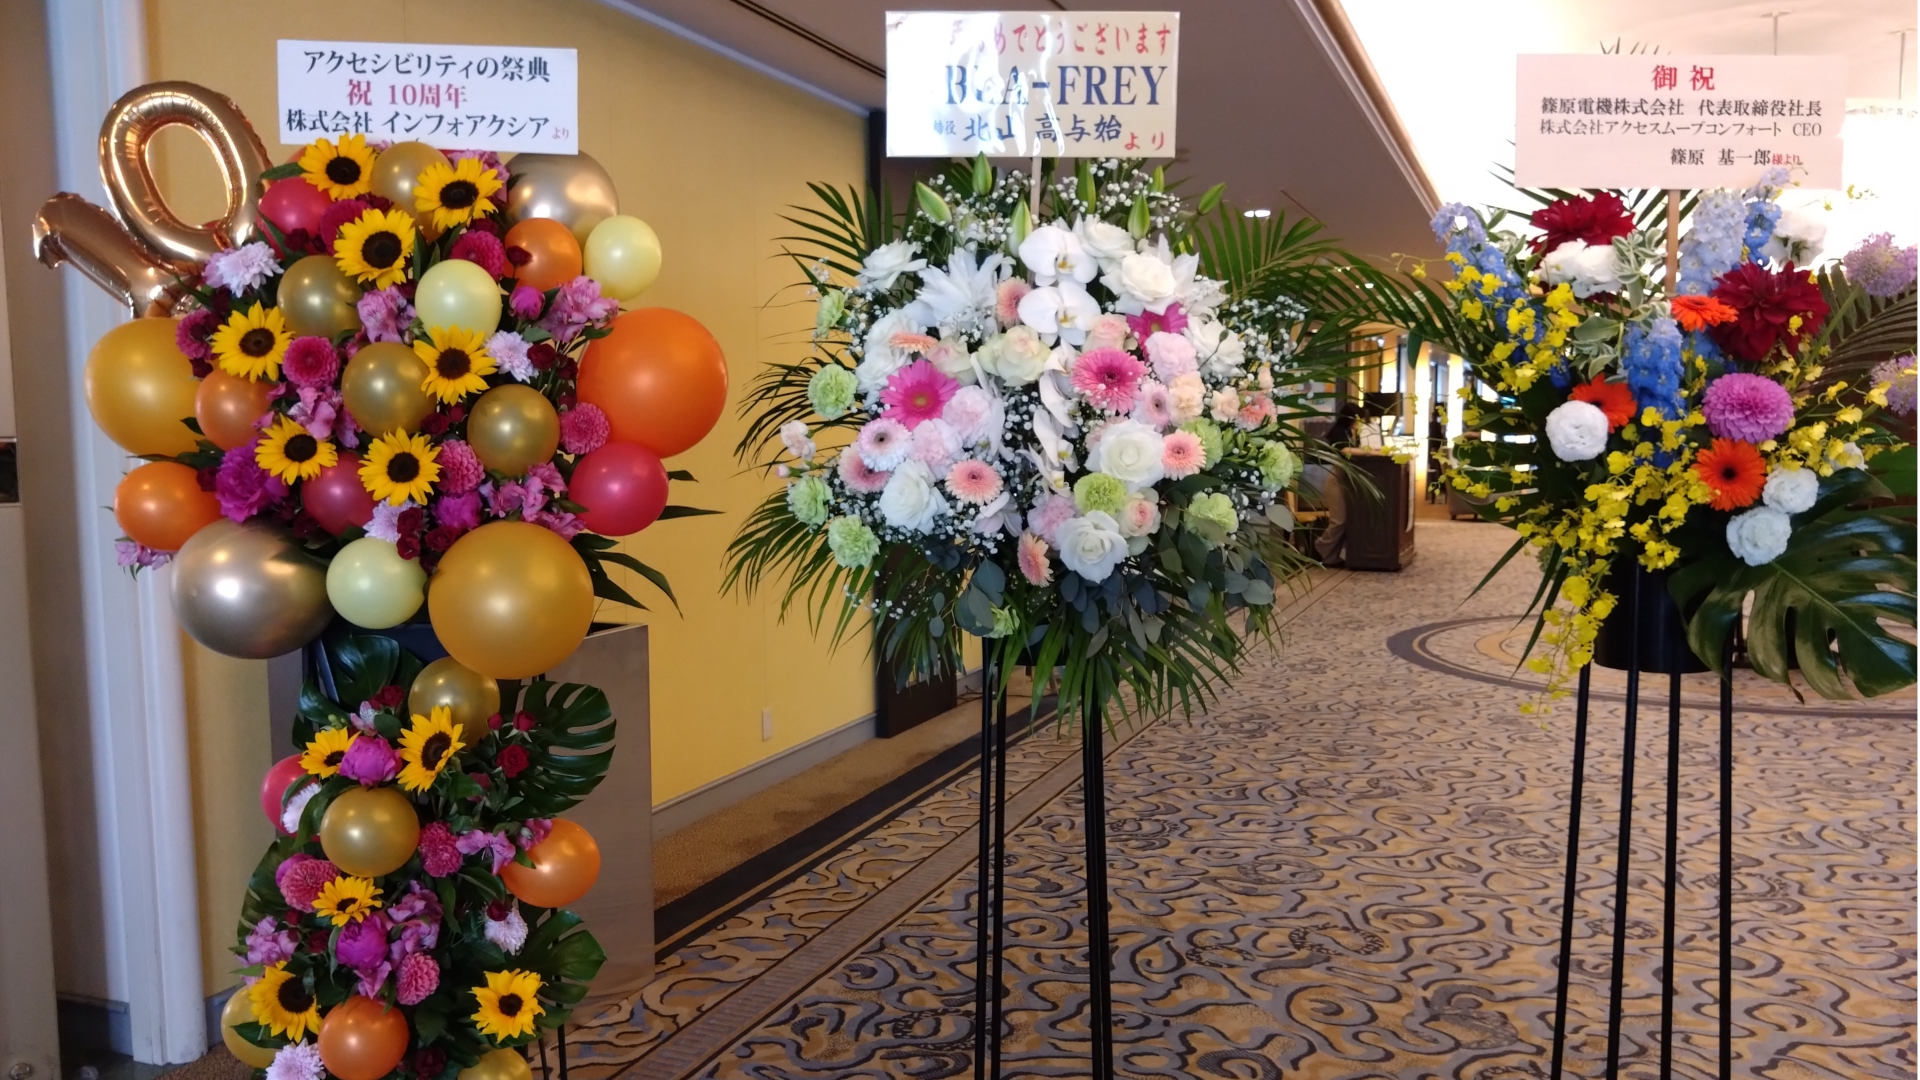 写真：イベント会場の入口。10周年のお祝いの、3つのスタンド花。色とりどりの花や丸い風船、10を表す金色の風船が飾られている。贈り主は、株式会社インフォアクシア、BLA-FREY、篠原電機株式会社・株式会社アクセスムーブコンフォート。